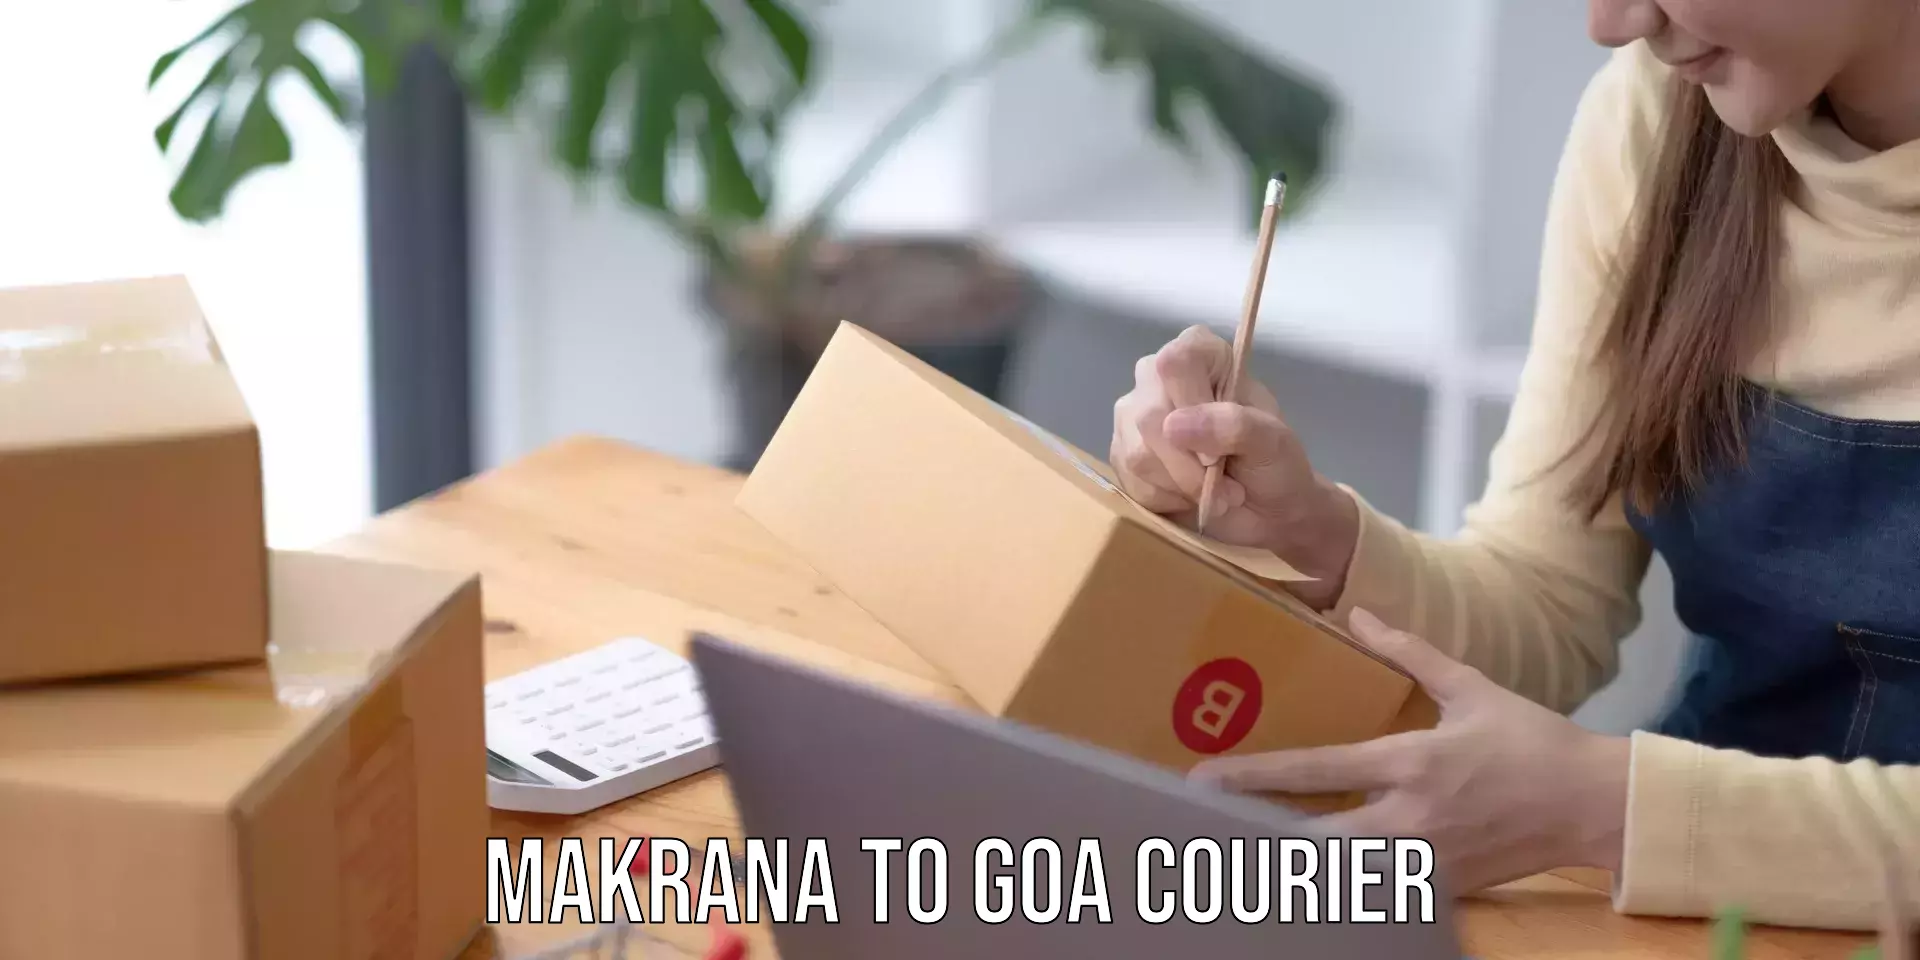 Courier service comparison Makrana to Goa